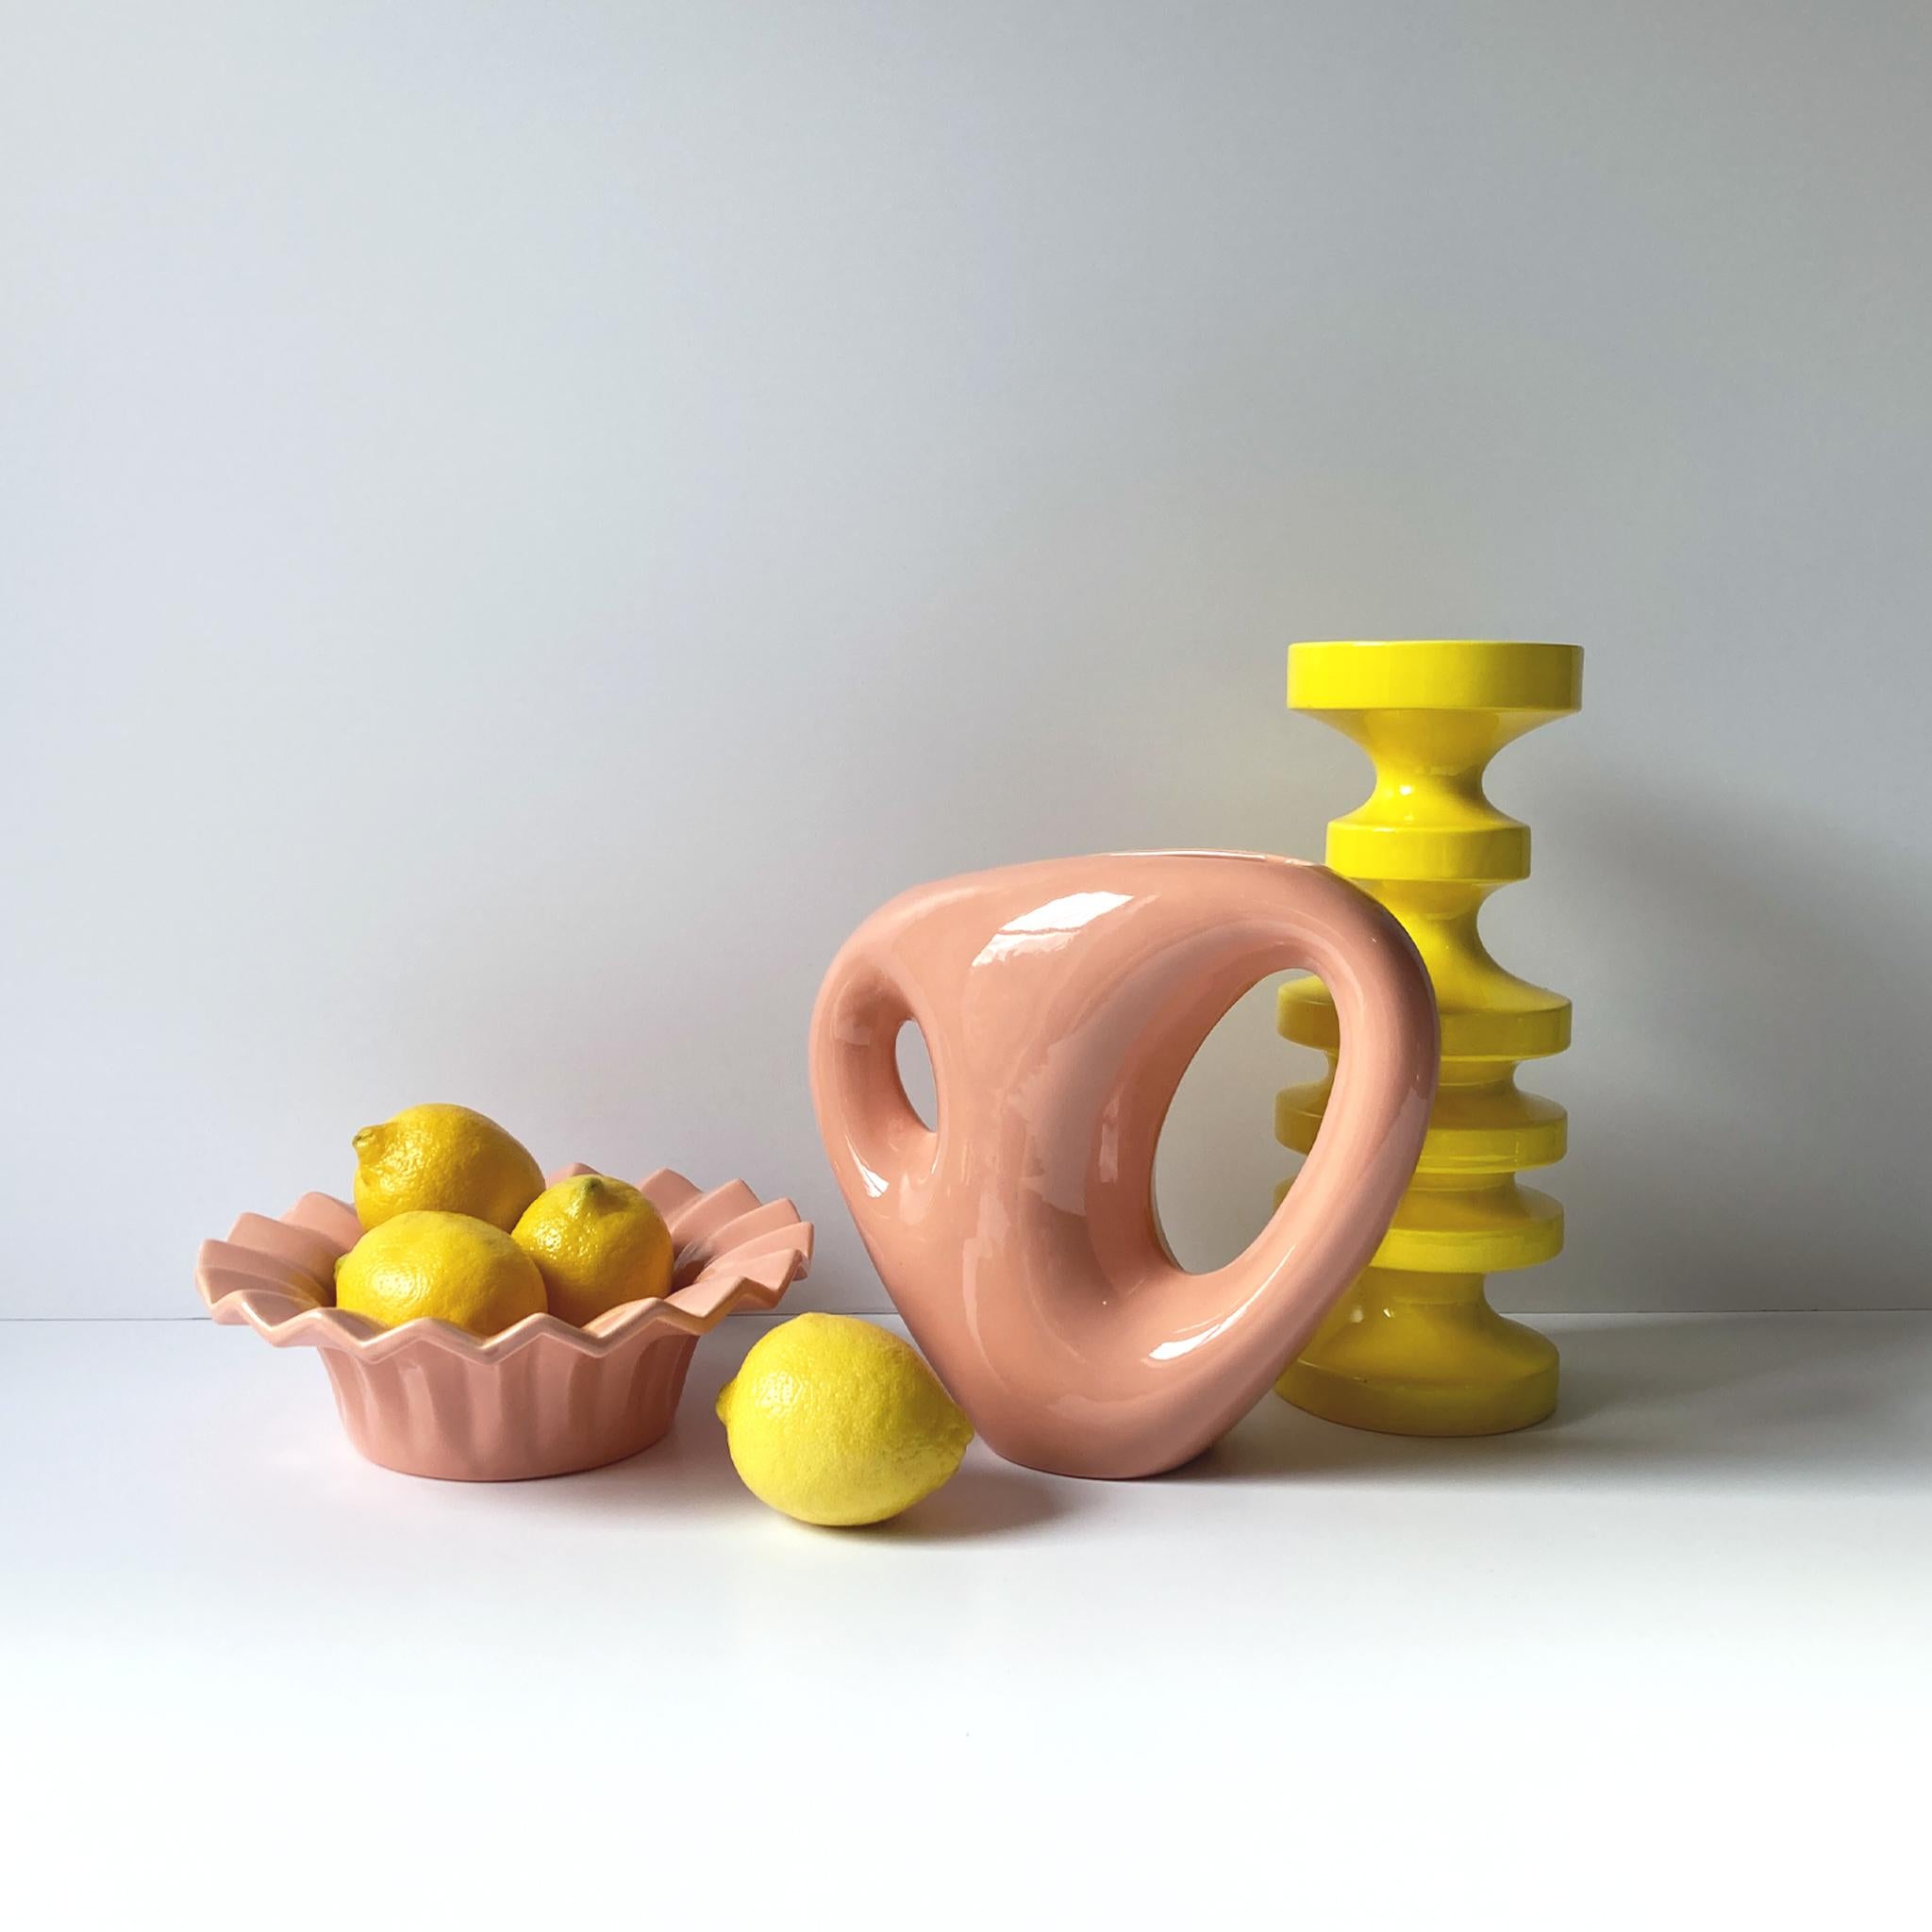 Une étonnante et rare sculpture abstraite en gradins de Haeger, d'un jaune canari éclatant. Cette pièce est coordonnée avec un fourre-tout de la même couleur, listé séparément, voir les photos. Magnifique seul, ou associé à des pièces tonales pour